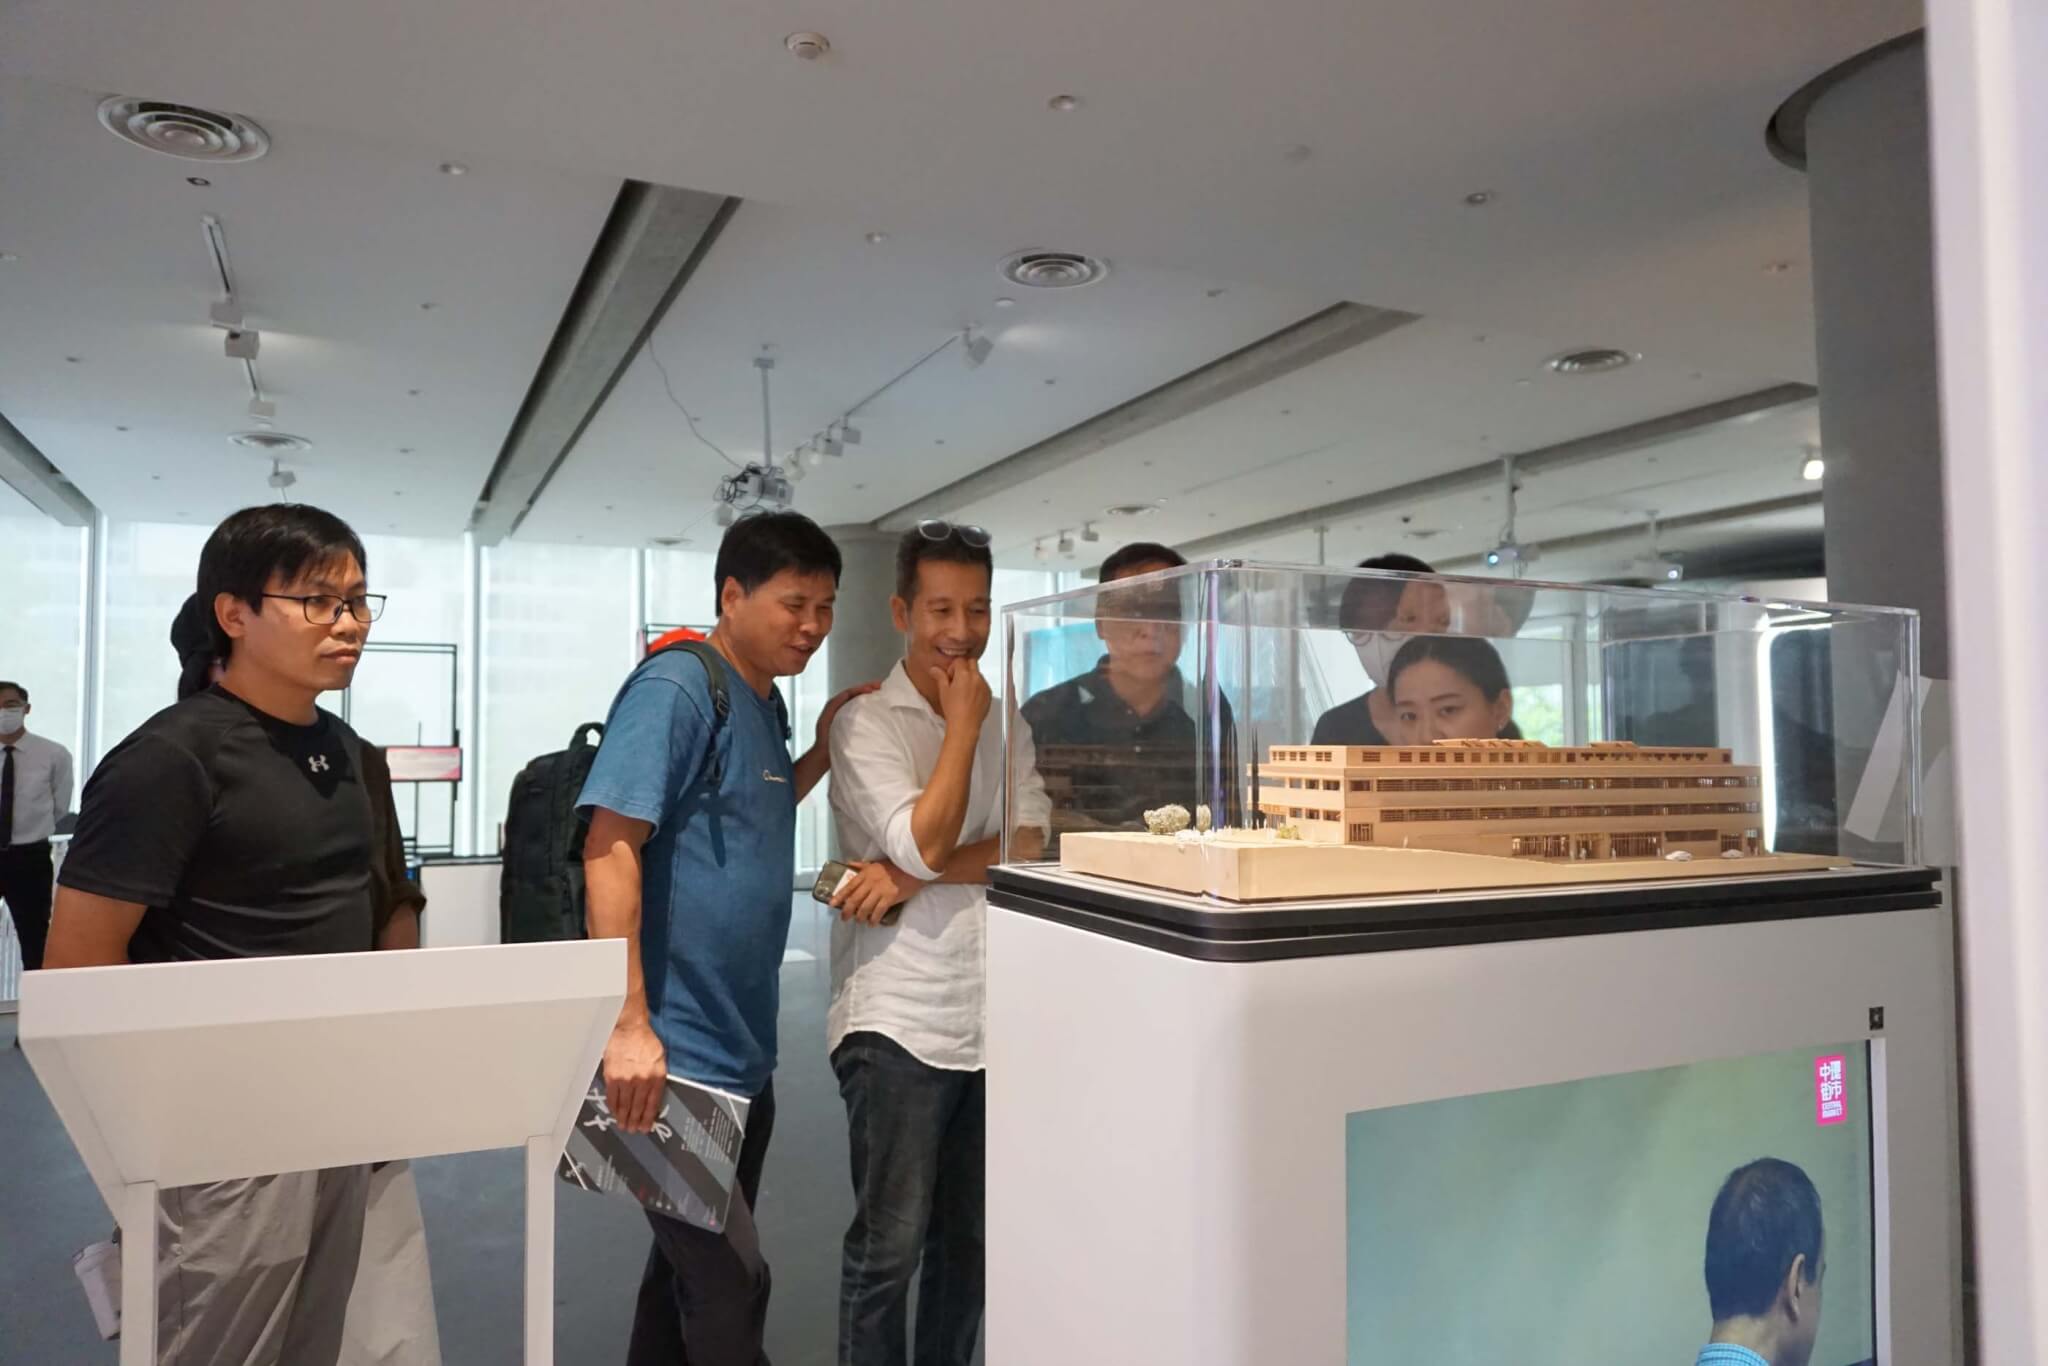 人们在看玻璃陈列柜里的木制模型